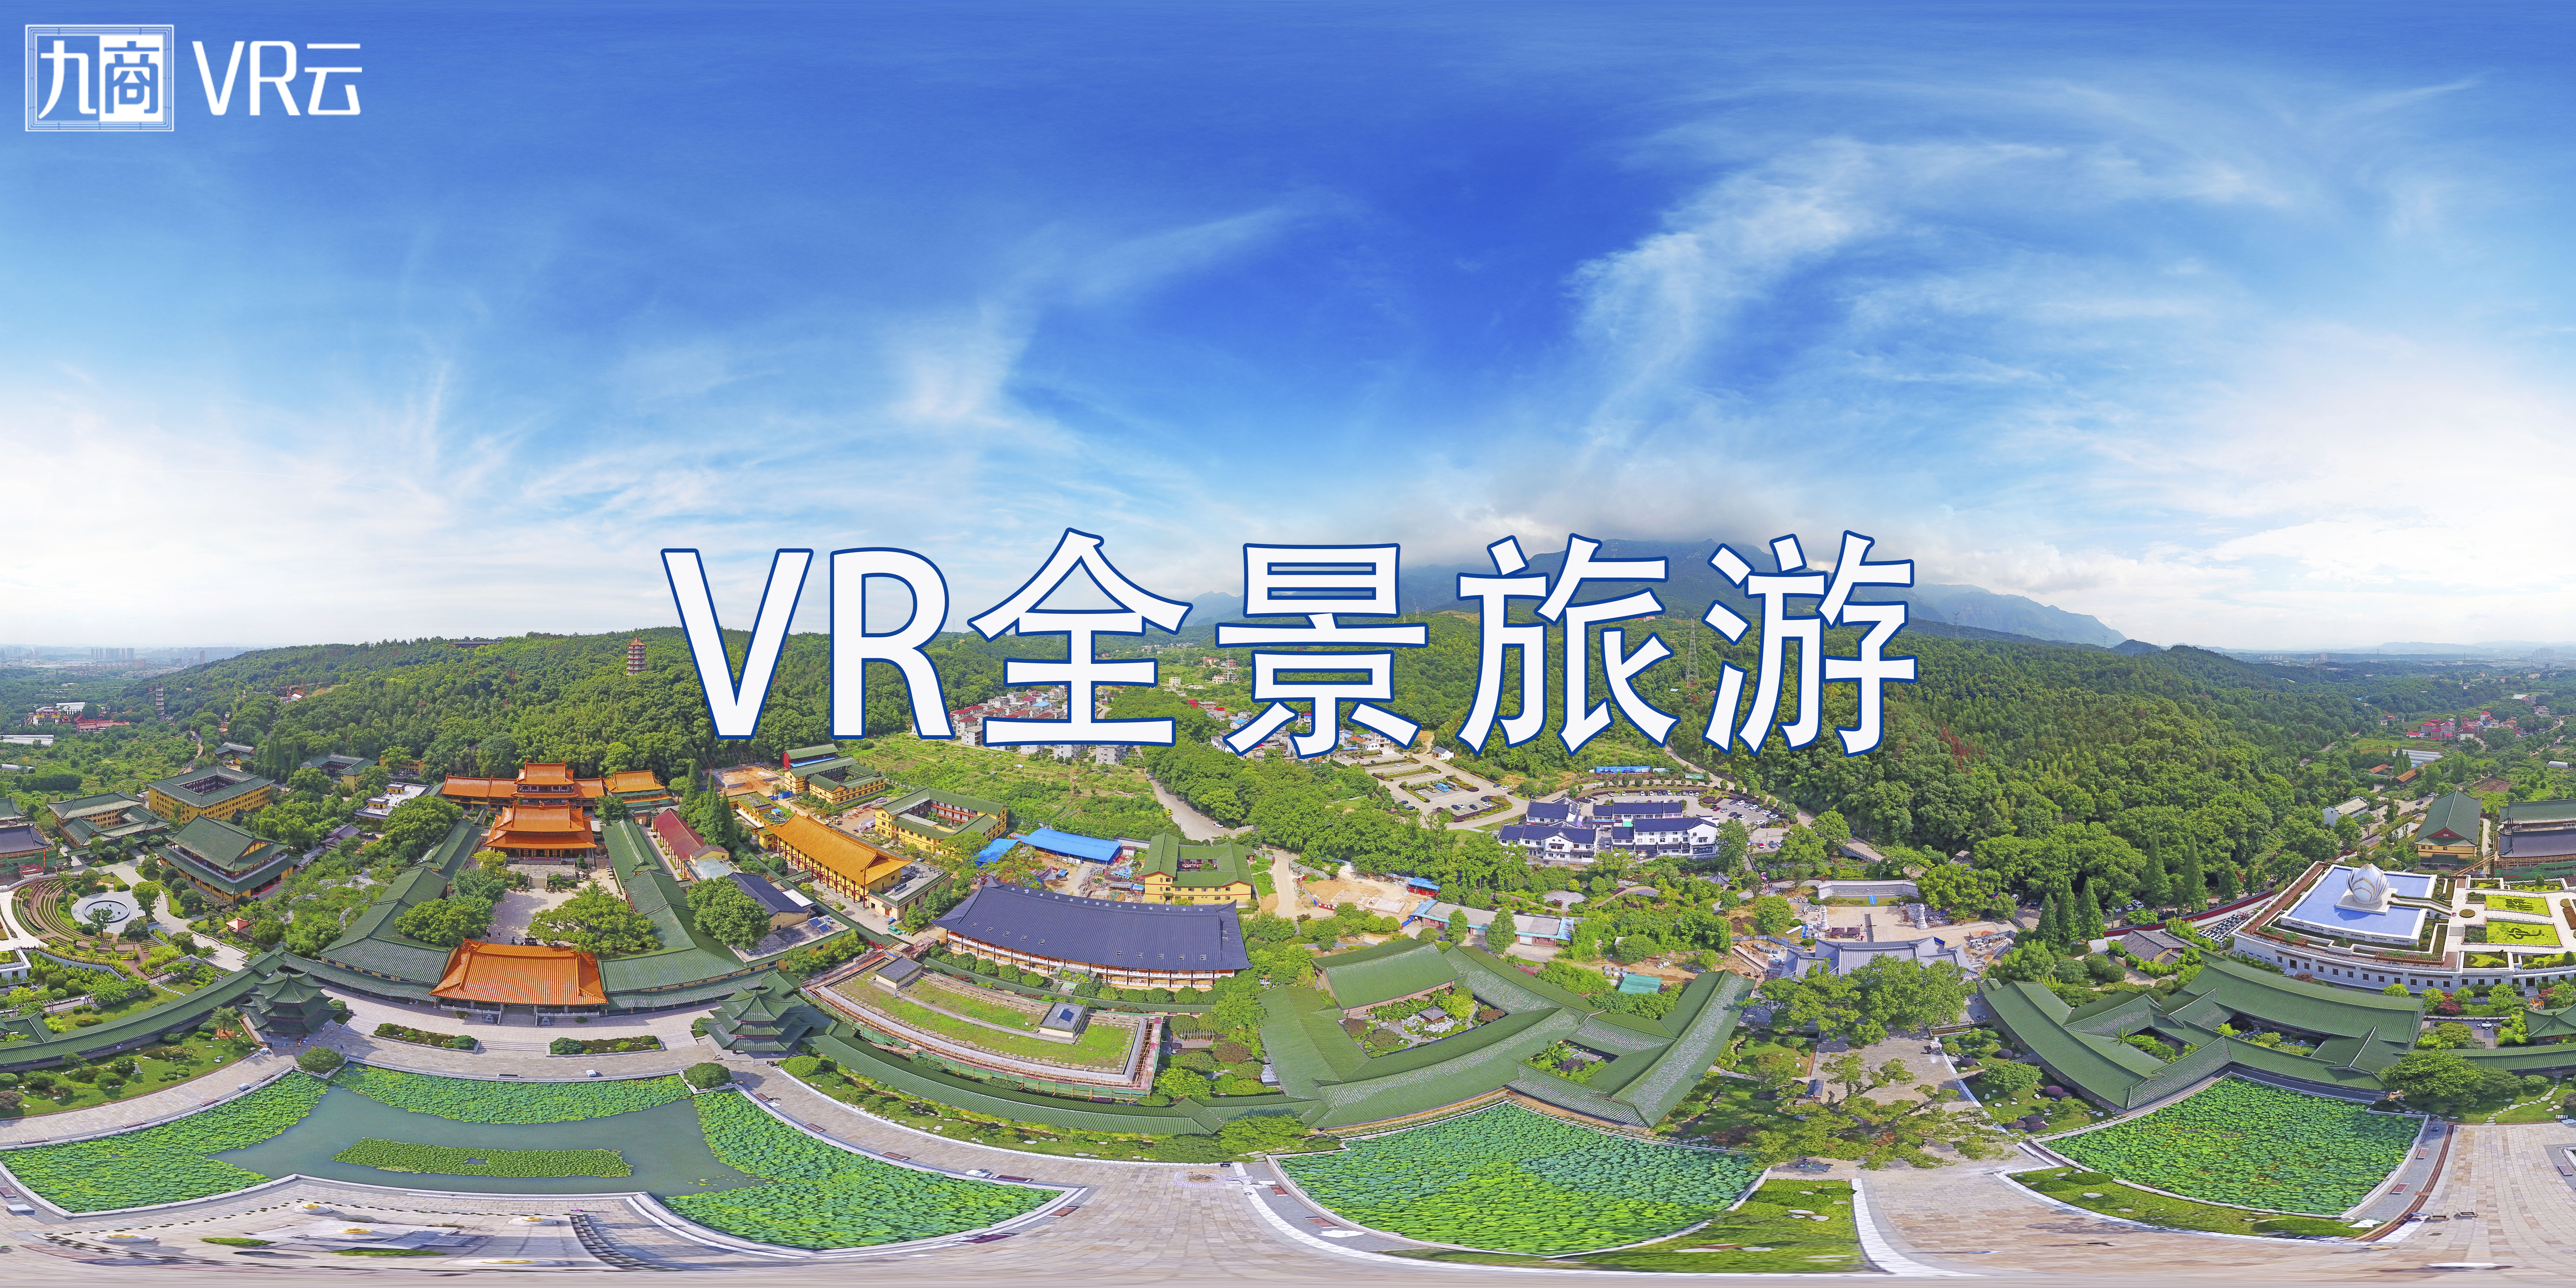 VR全景旅游2.jpg